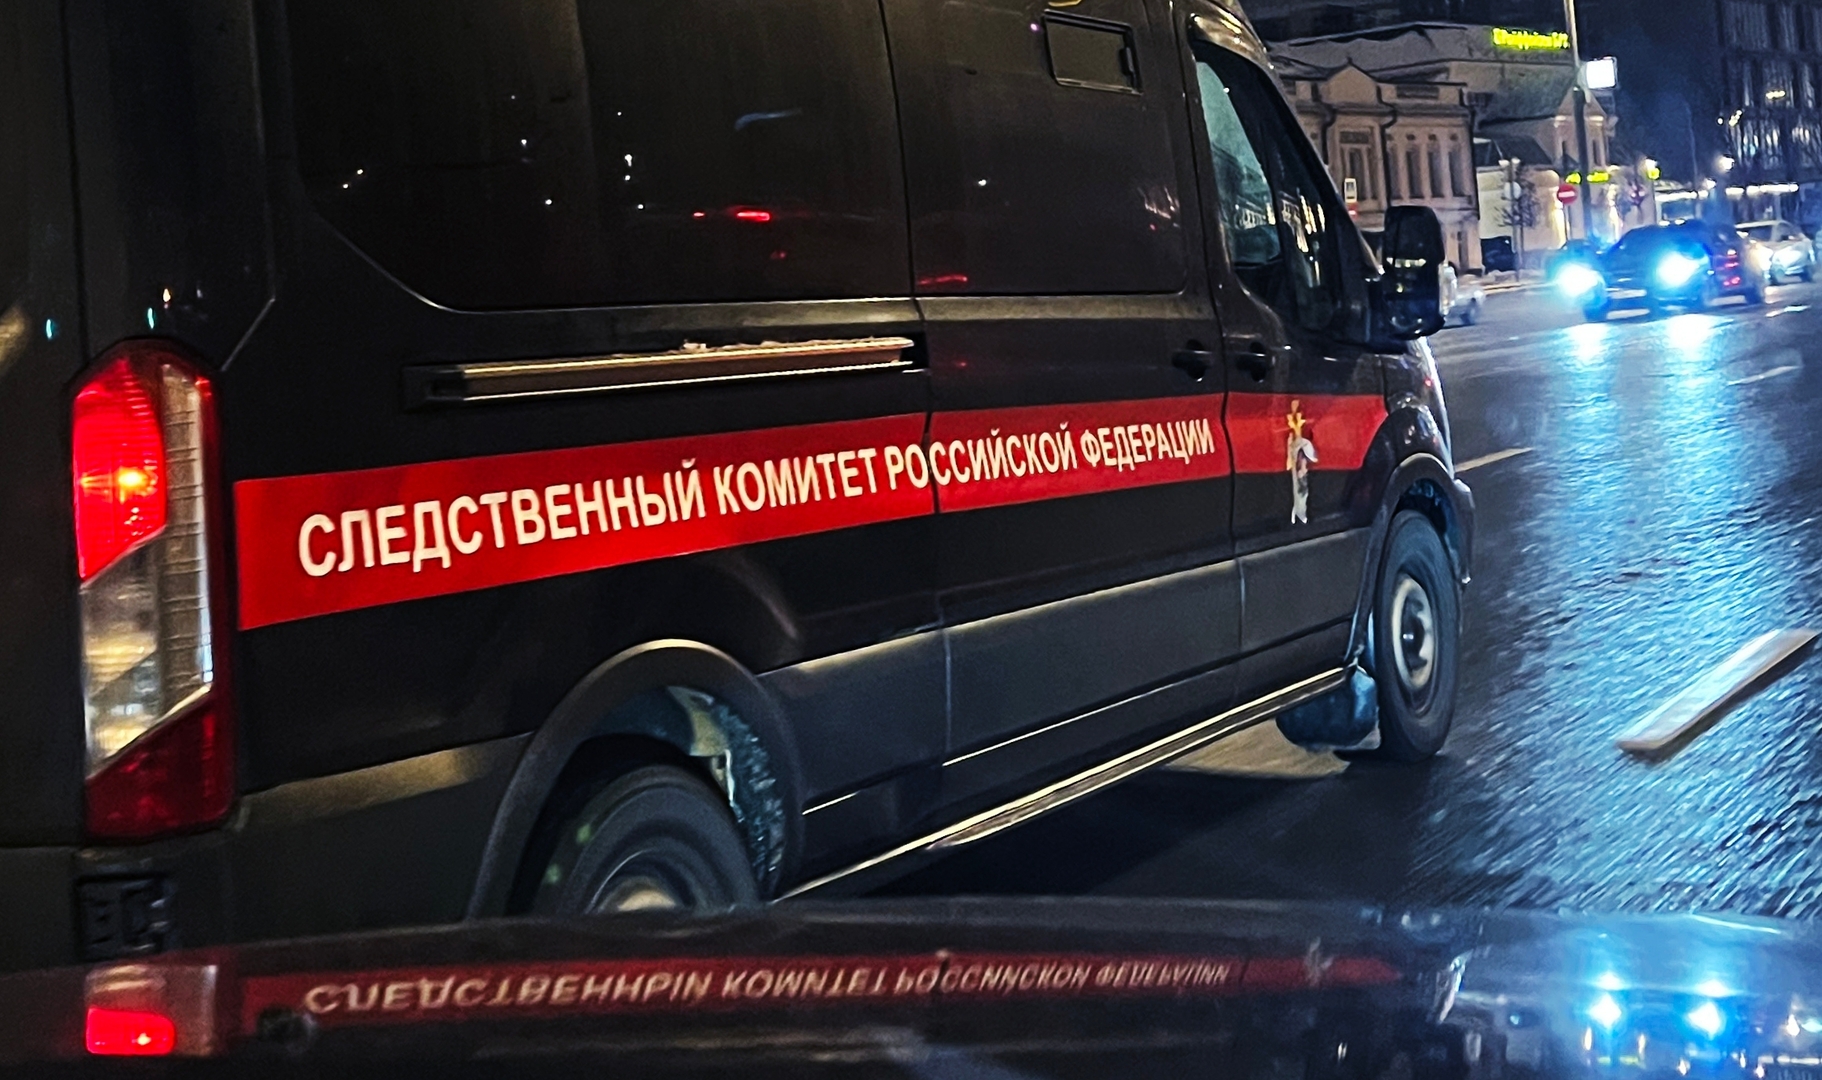 موسكو.. ضبط عصابة لتنظيم قناة للهجرة عبر زيجات صورية